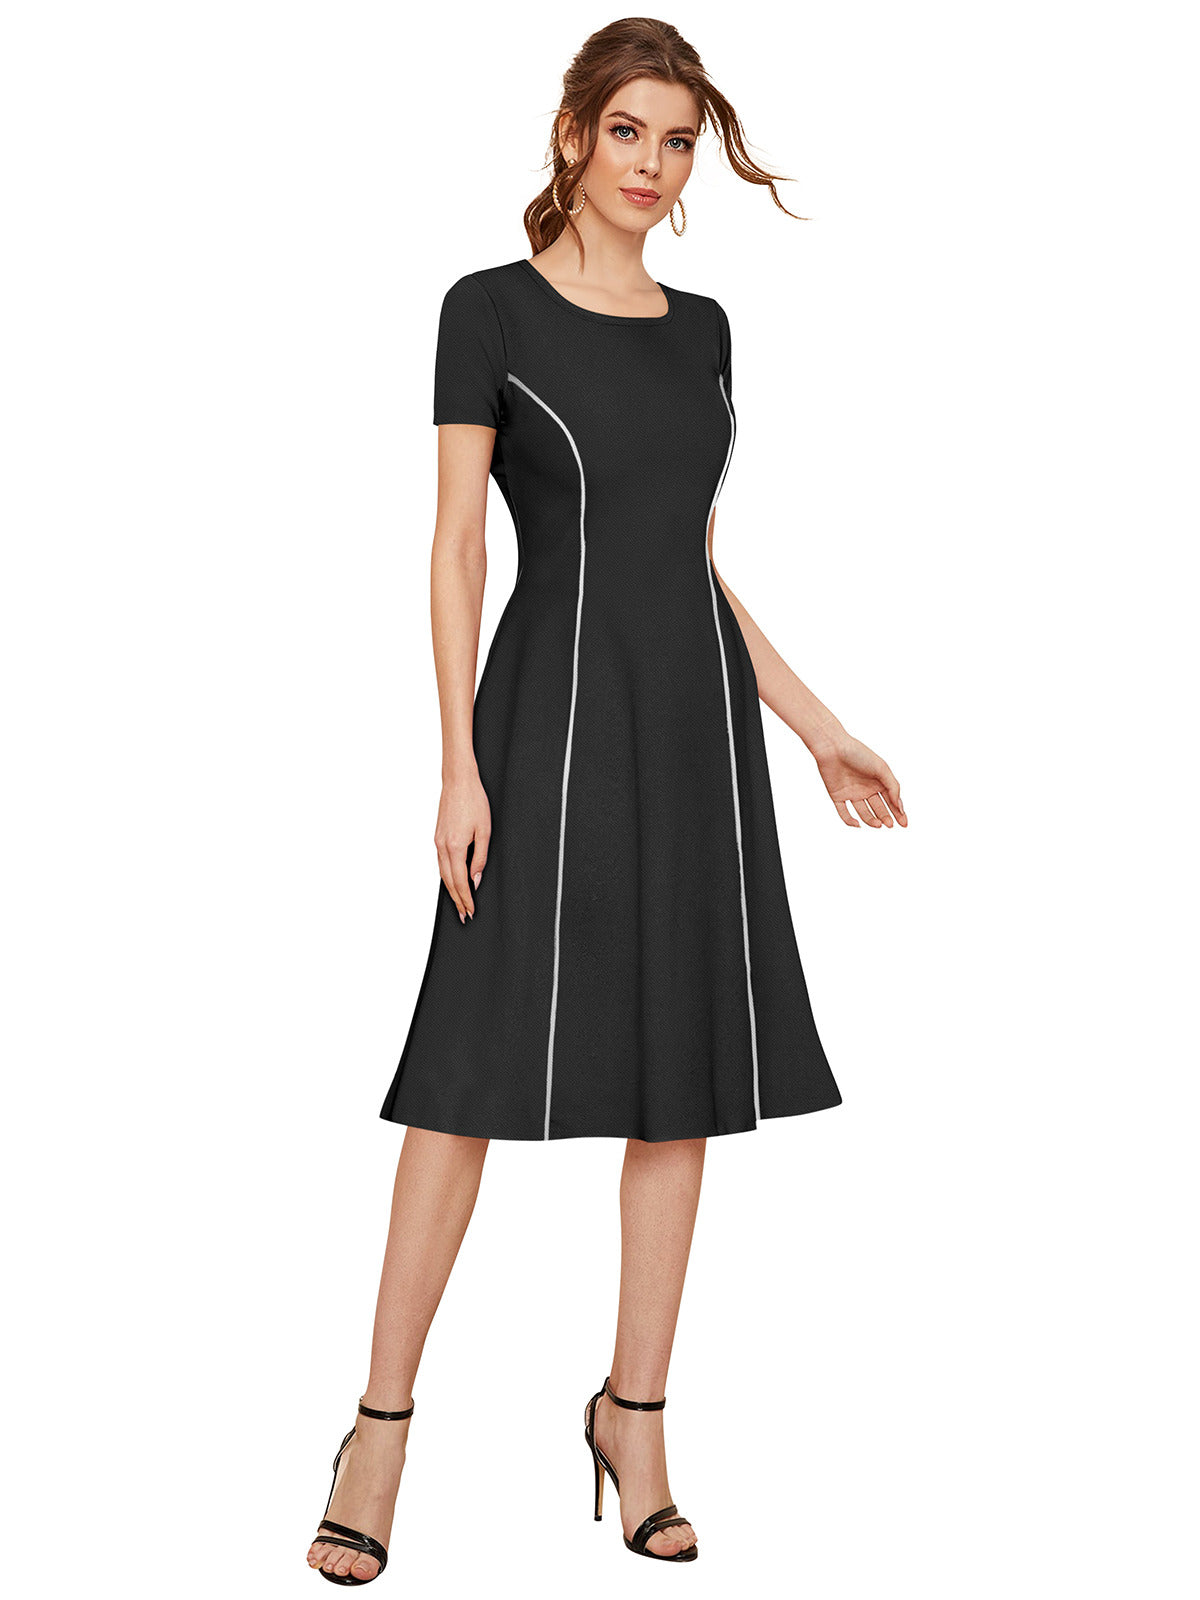 Odette Black Skater Knit Fabric Dress For Women